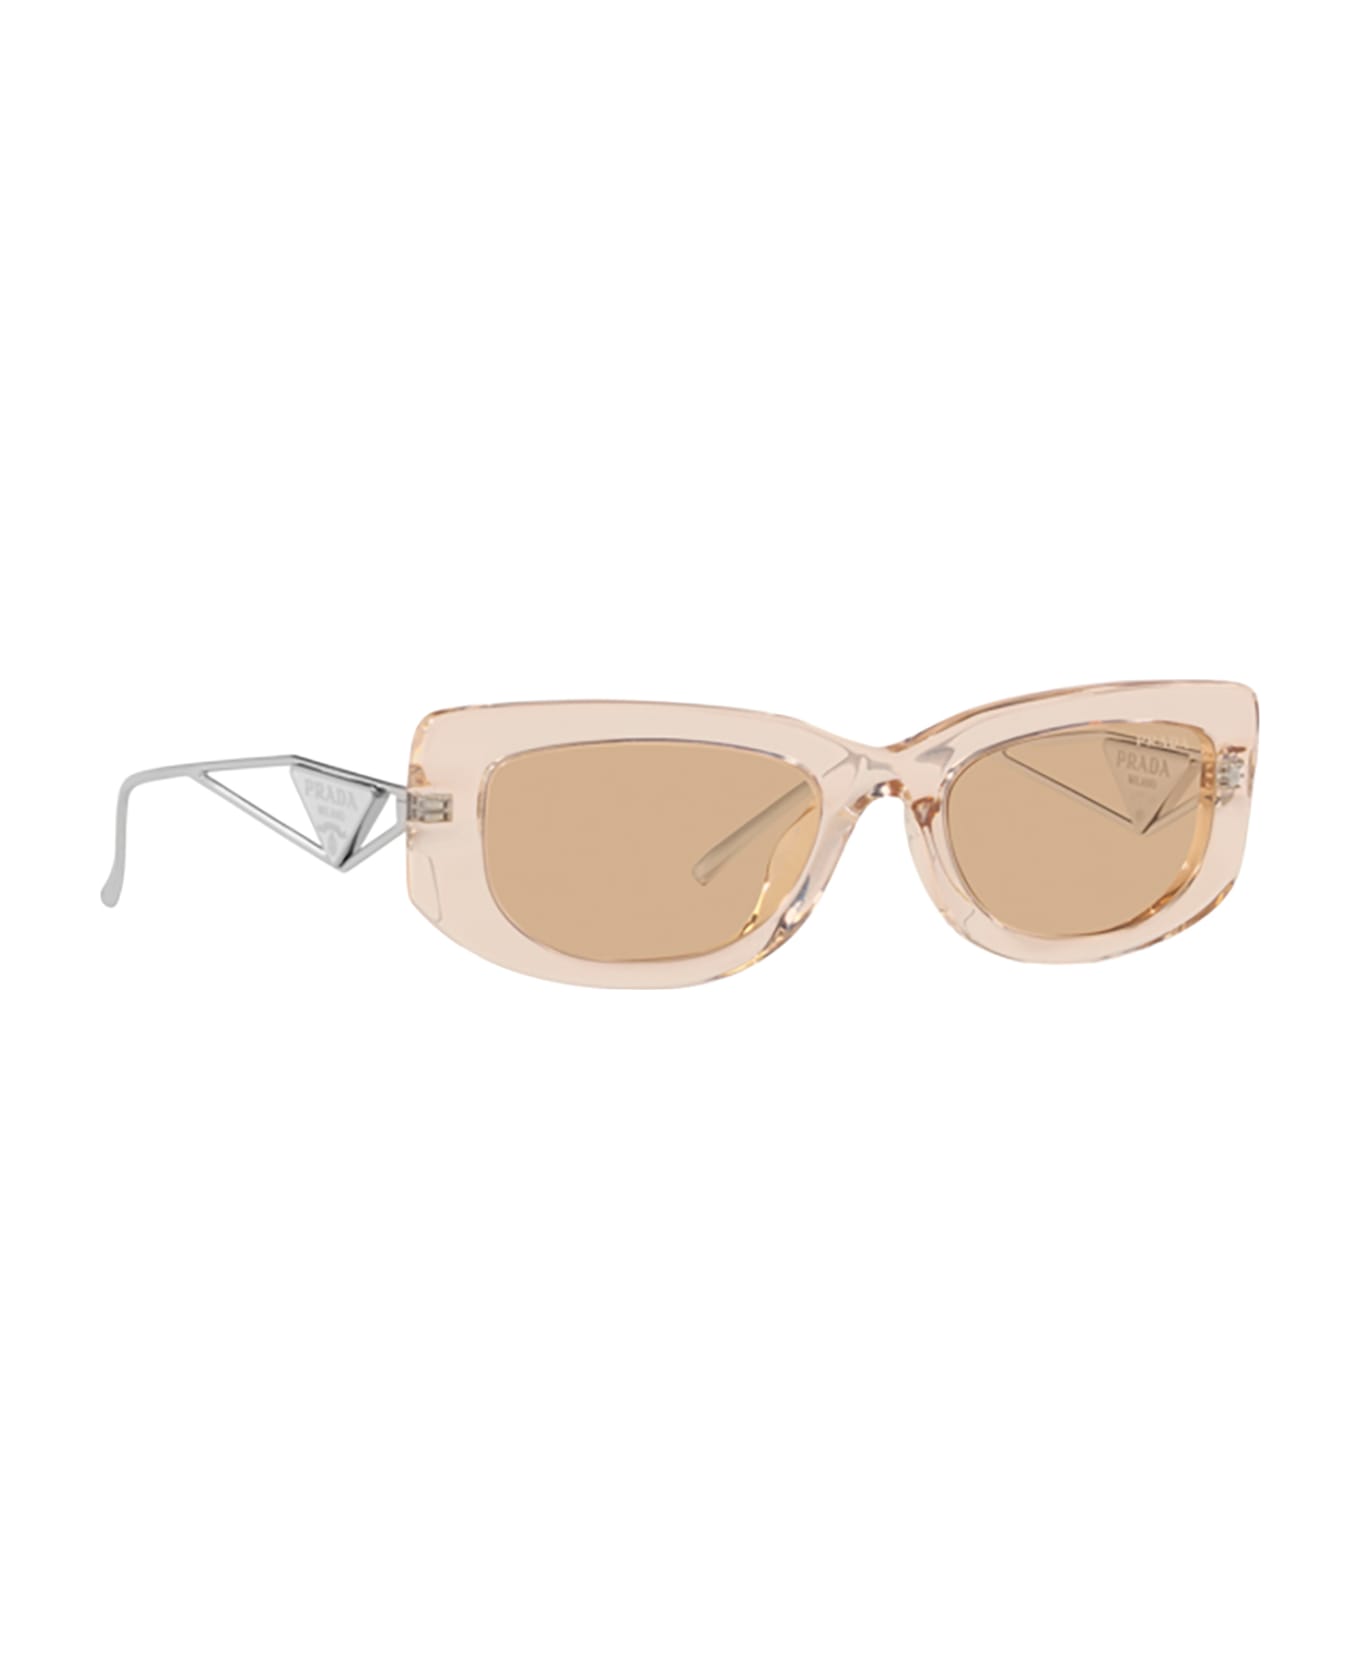 Prada Eyewear Pr 14ys Crystal Beige Sunglasses - Crystal Beige